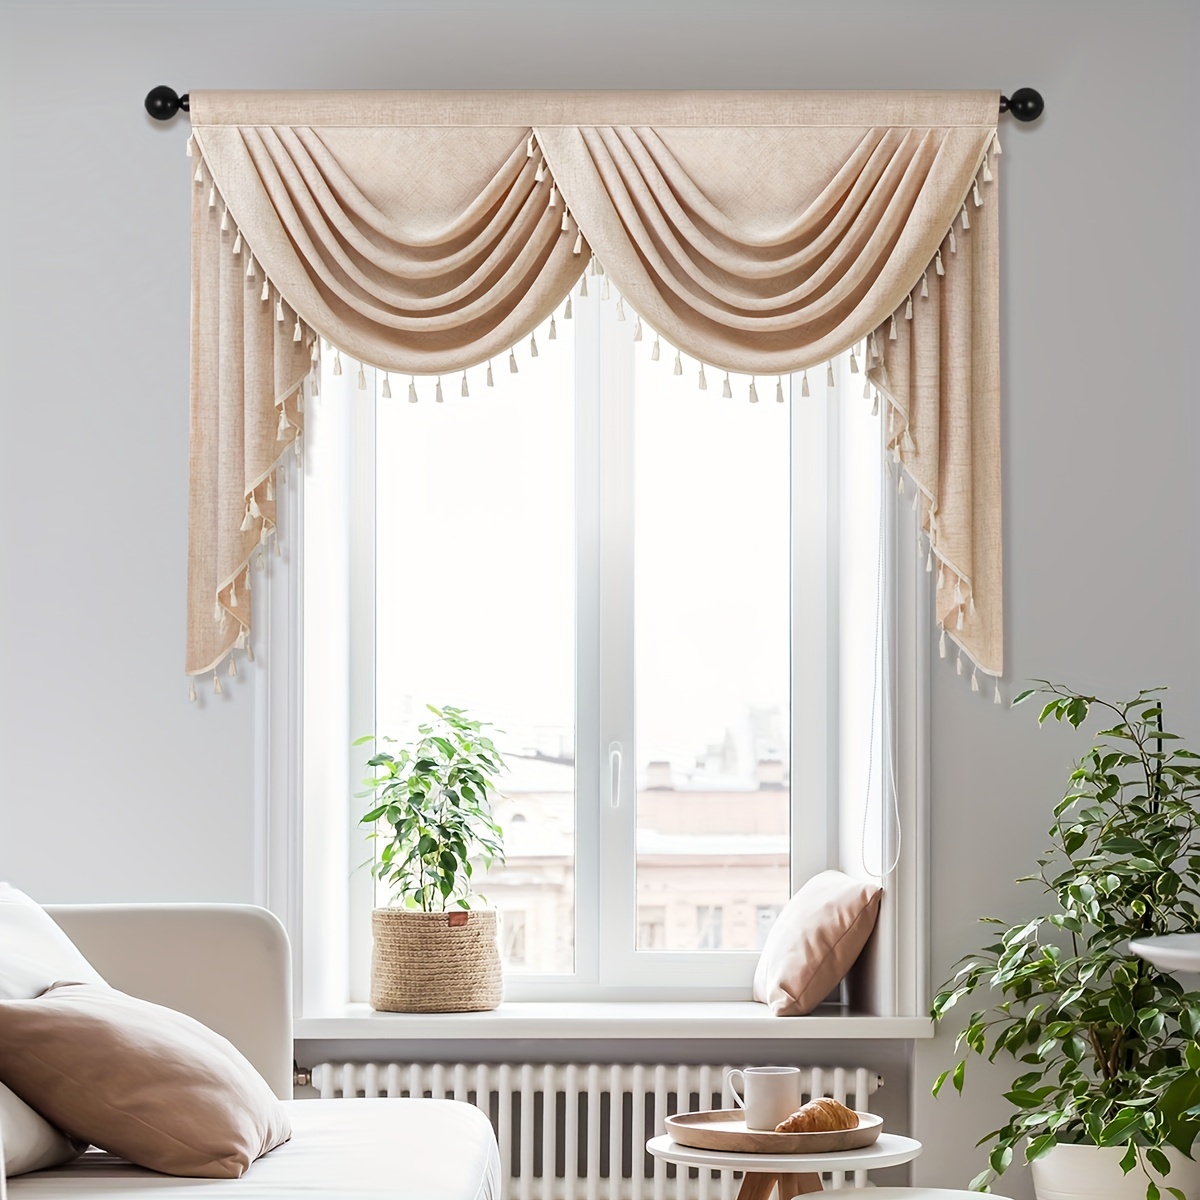 Cortina semiopaca para ventana, cortina transparente con sombreado de luz,  bordado europeo, tul, gris, Floral, cenefa